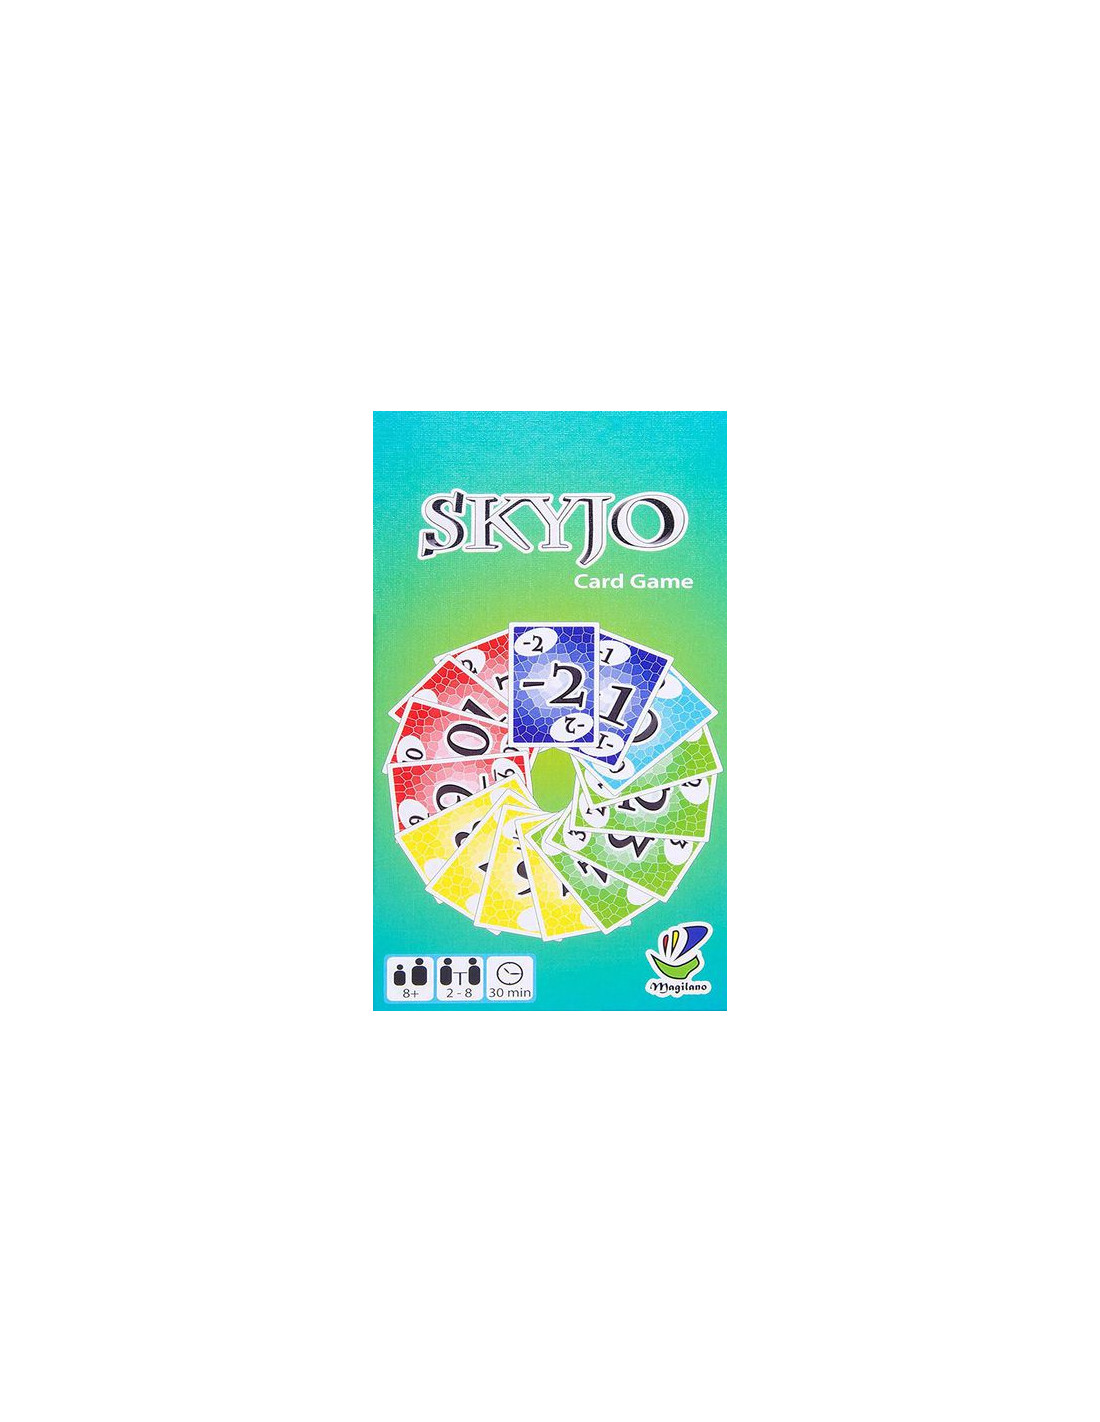 Skyjo Card Game 